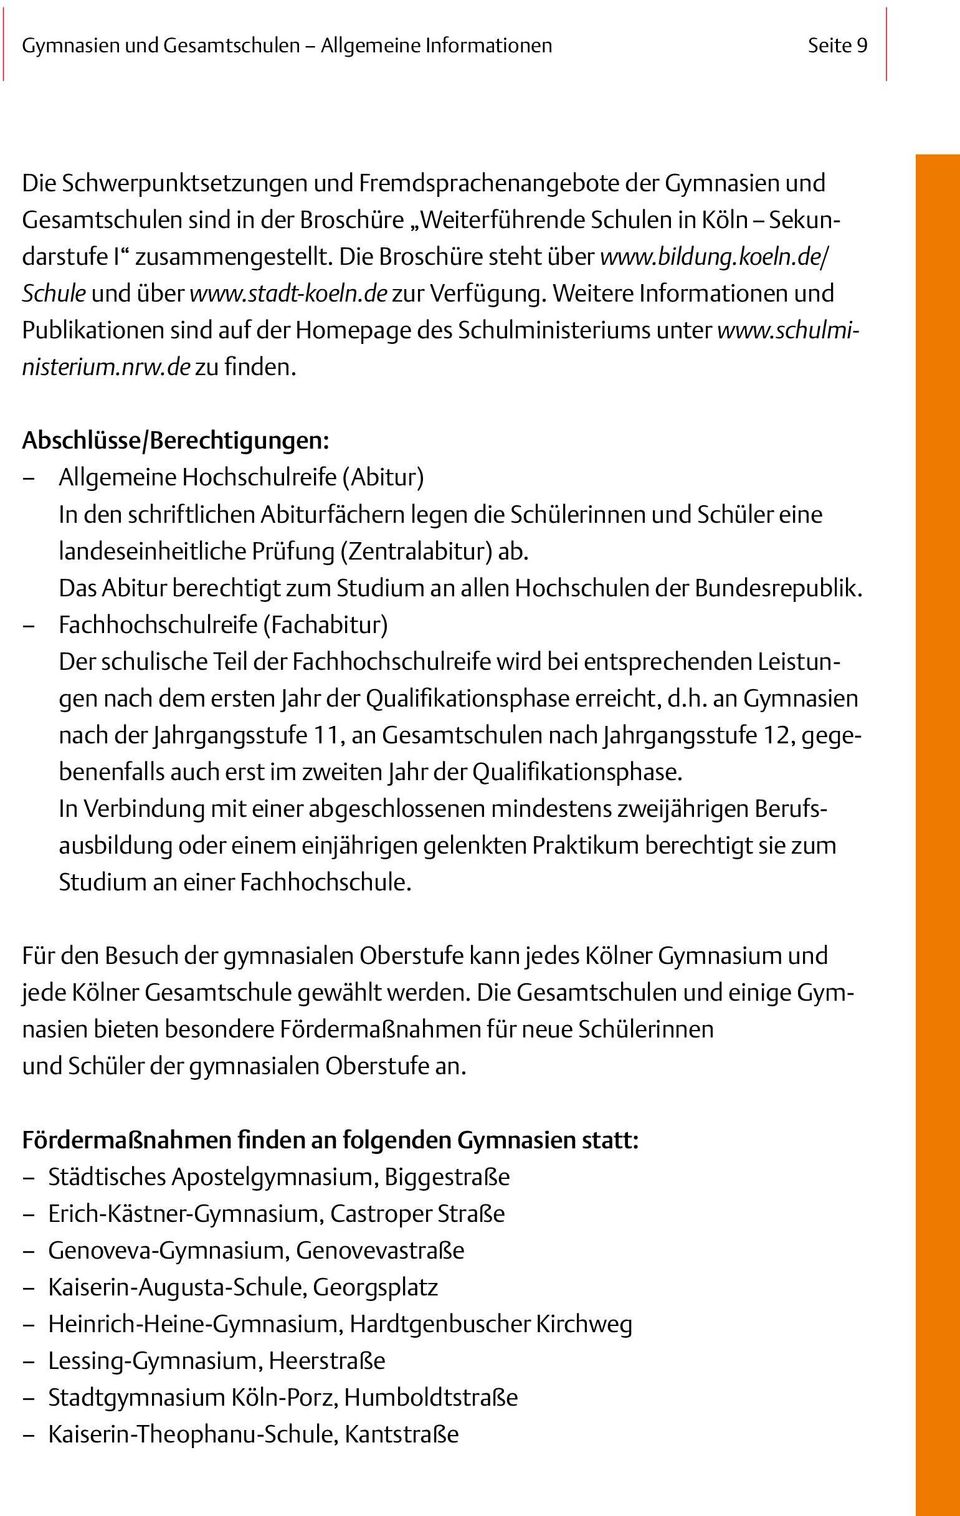 Weitere Informationen und Publikationen sind auf der Homepage des Schulministeriums unter www.schulministerium.nrw.de zu finden.